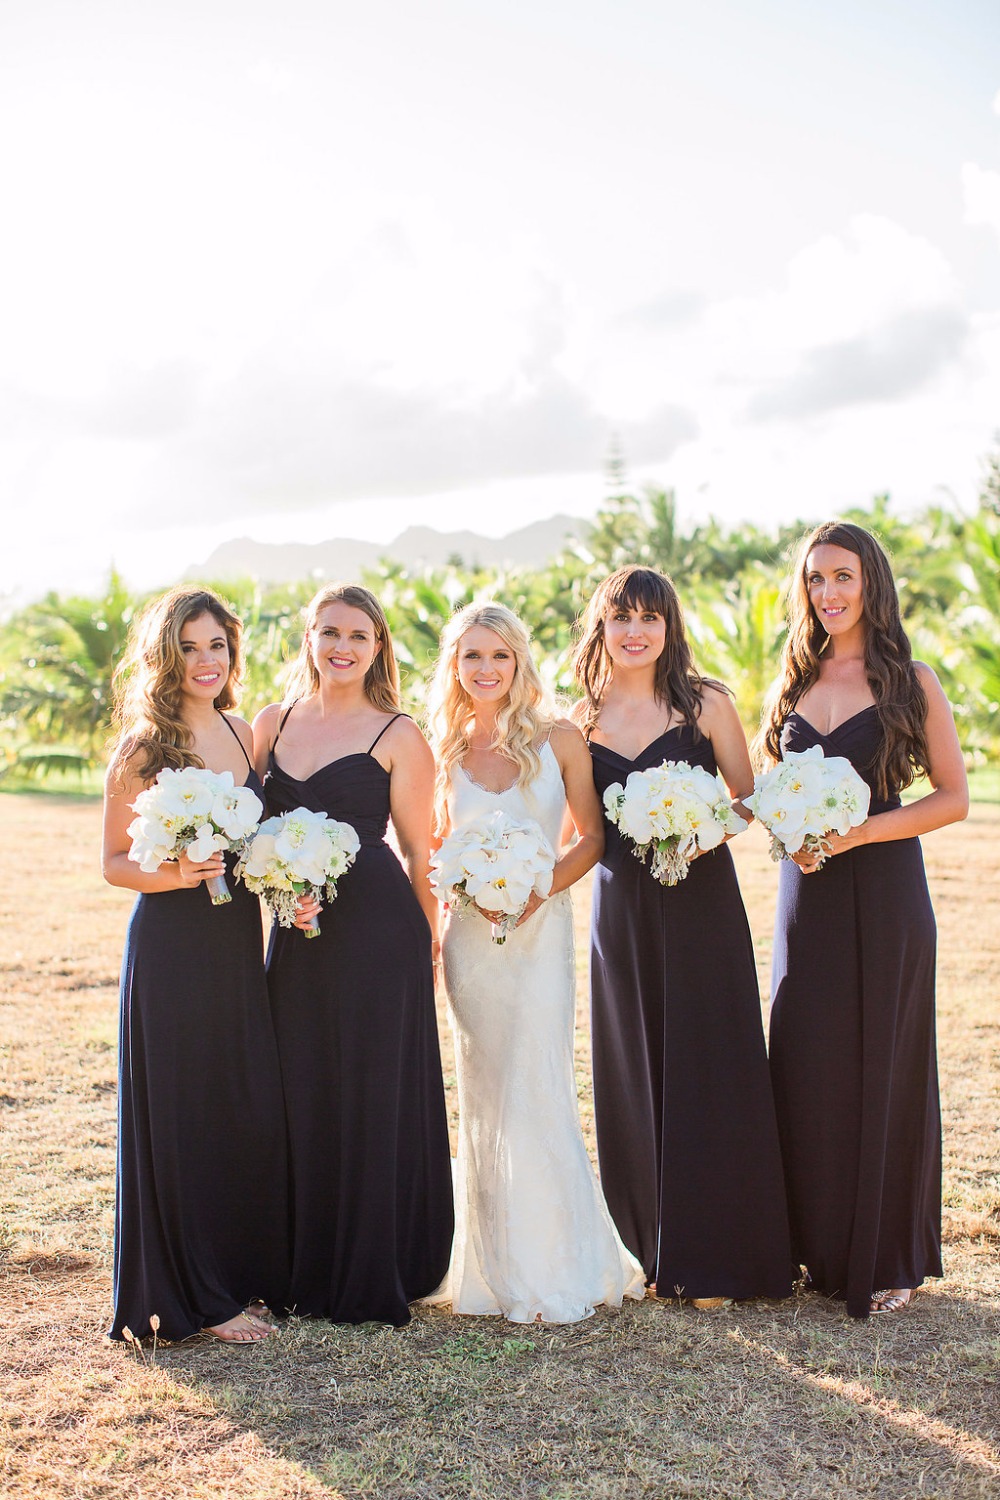 Bridesmaid dresses in black